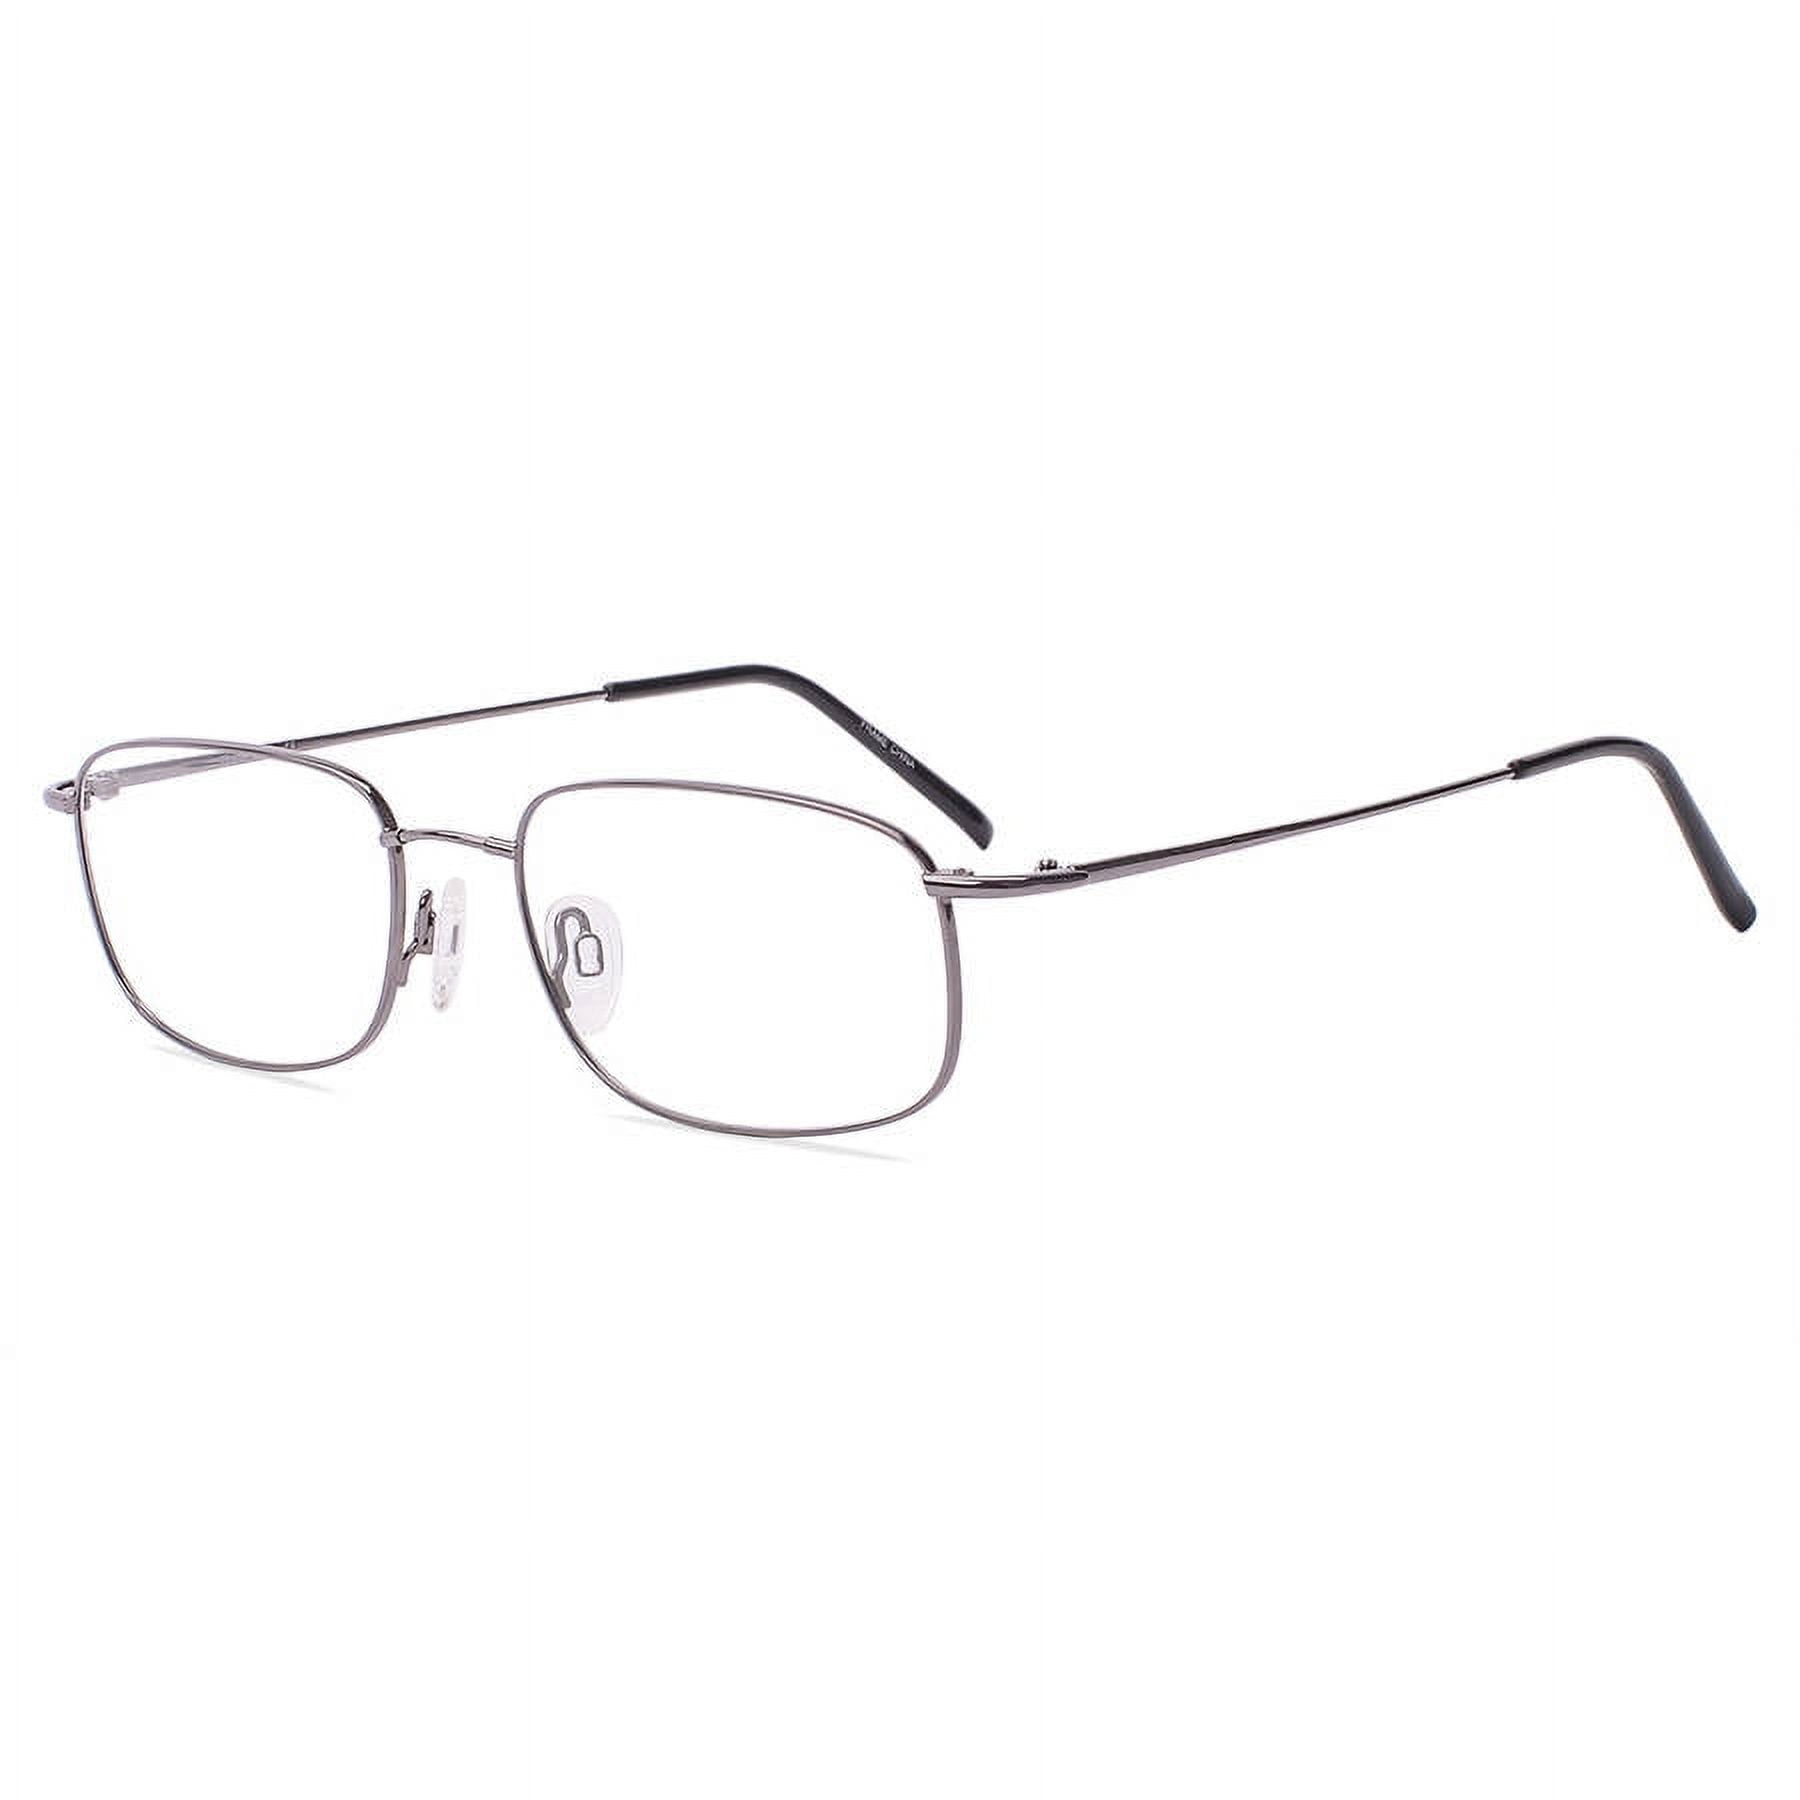 TiFlex Men's Prescription Eyeglasses, T1510, Dark Pewter, 55-18-145 ...